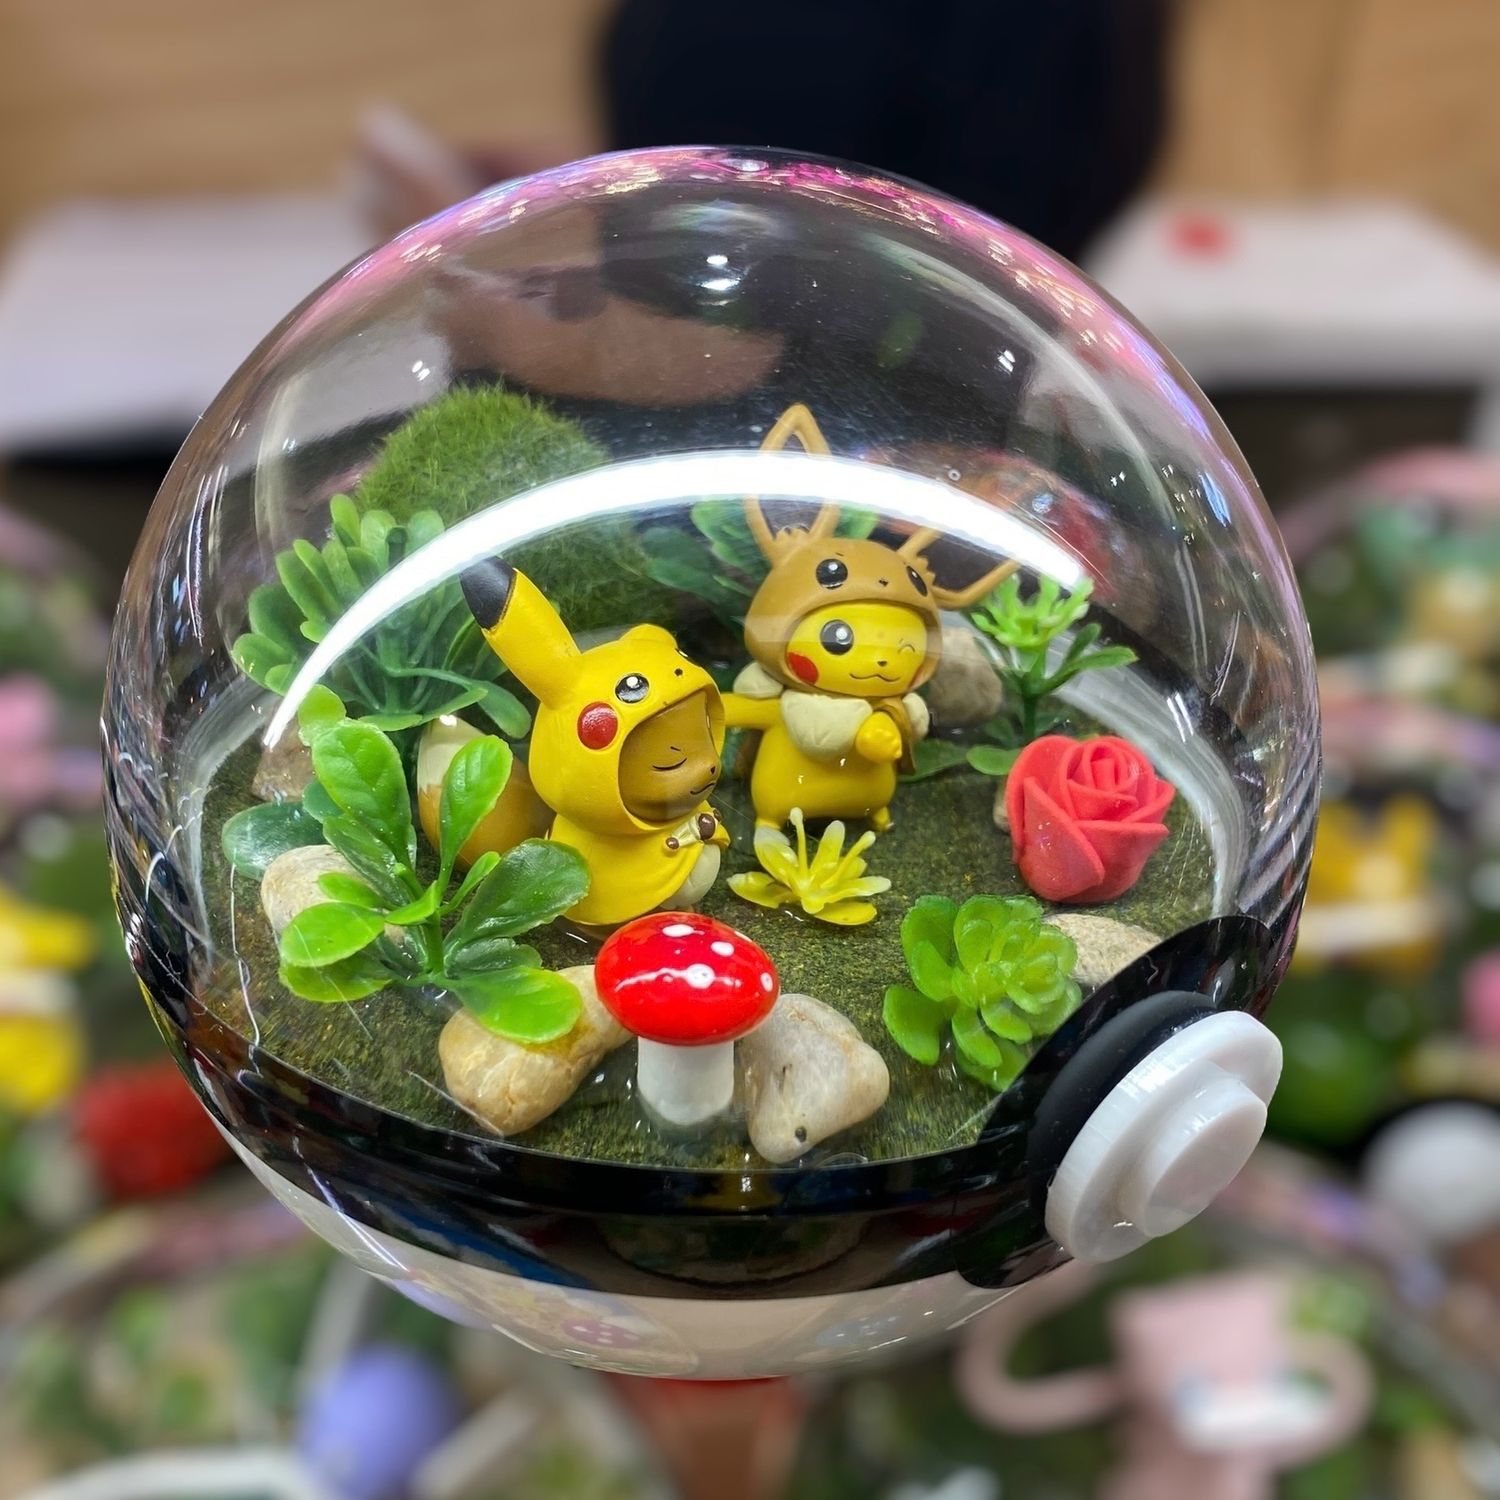 Pikachu and Eevee hoodie terrarium